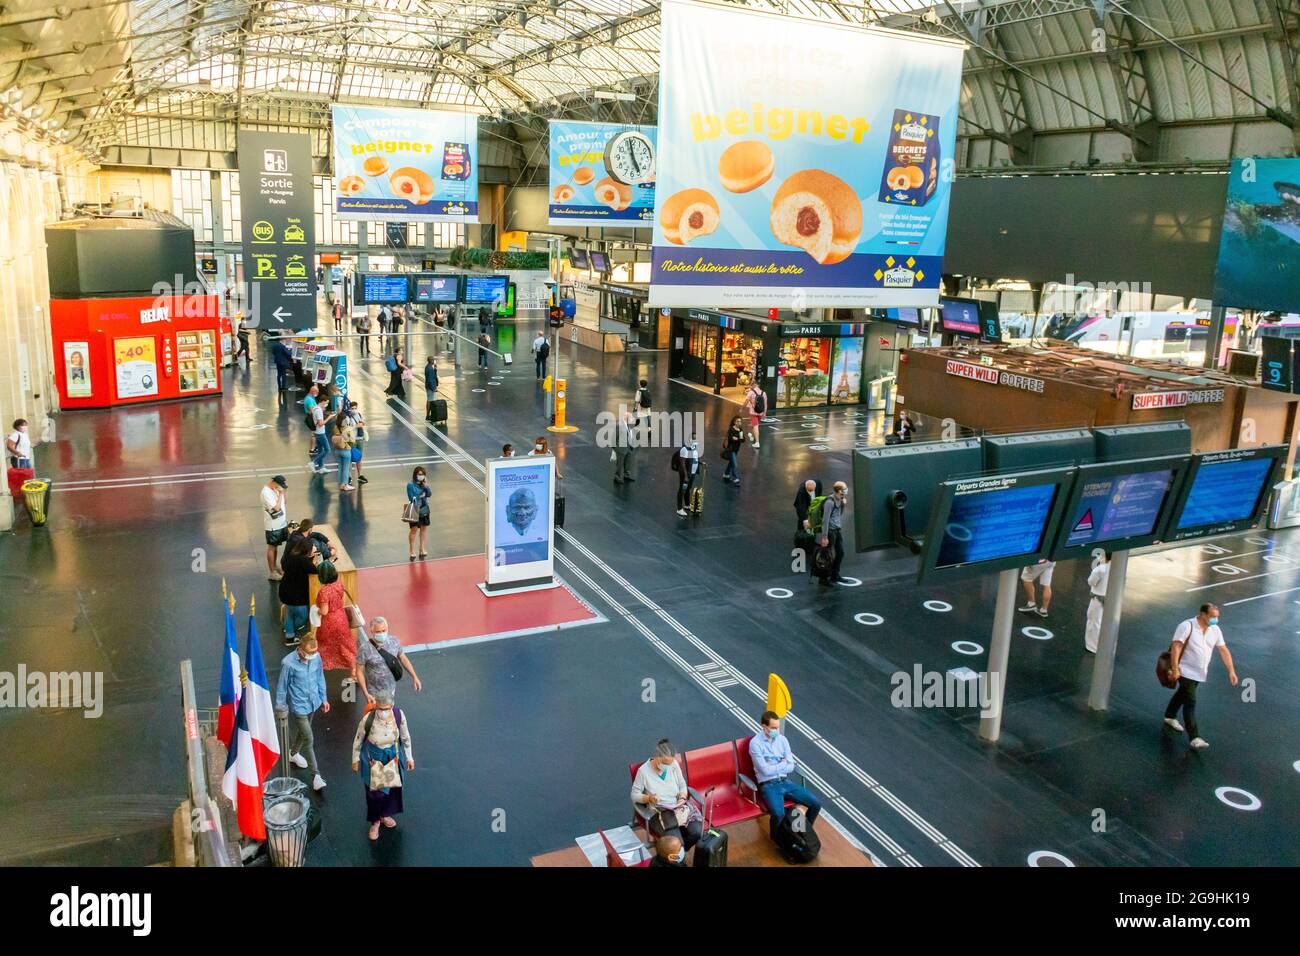 Paris, France, High angle, Gare française historique, Gare de l'est, Interiors, personnes voyageant, campagne publicitaire Banque D'Images